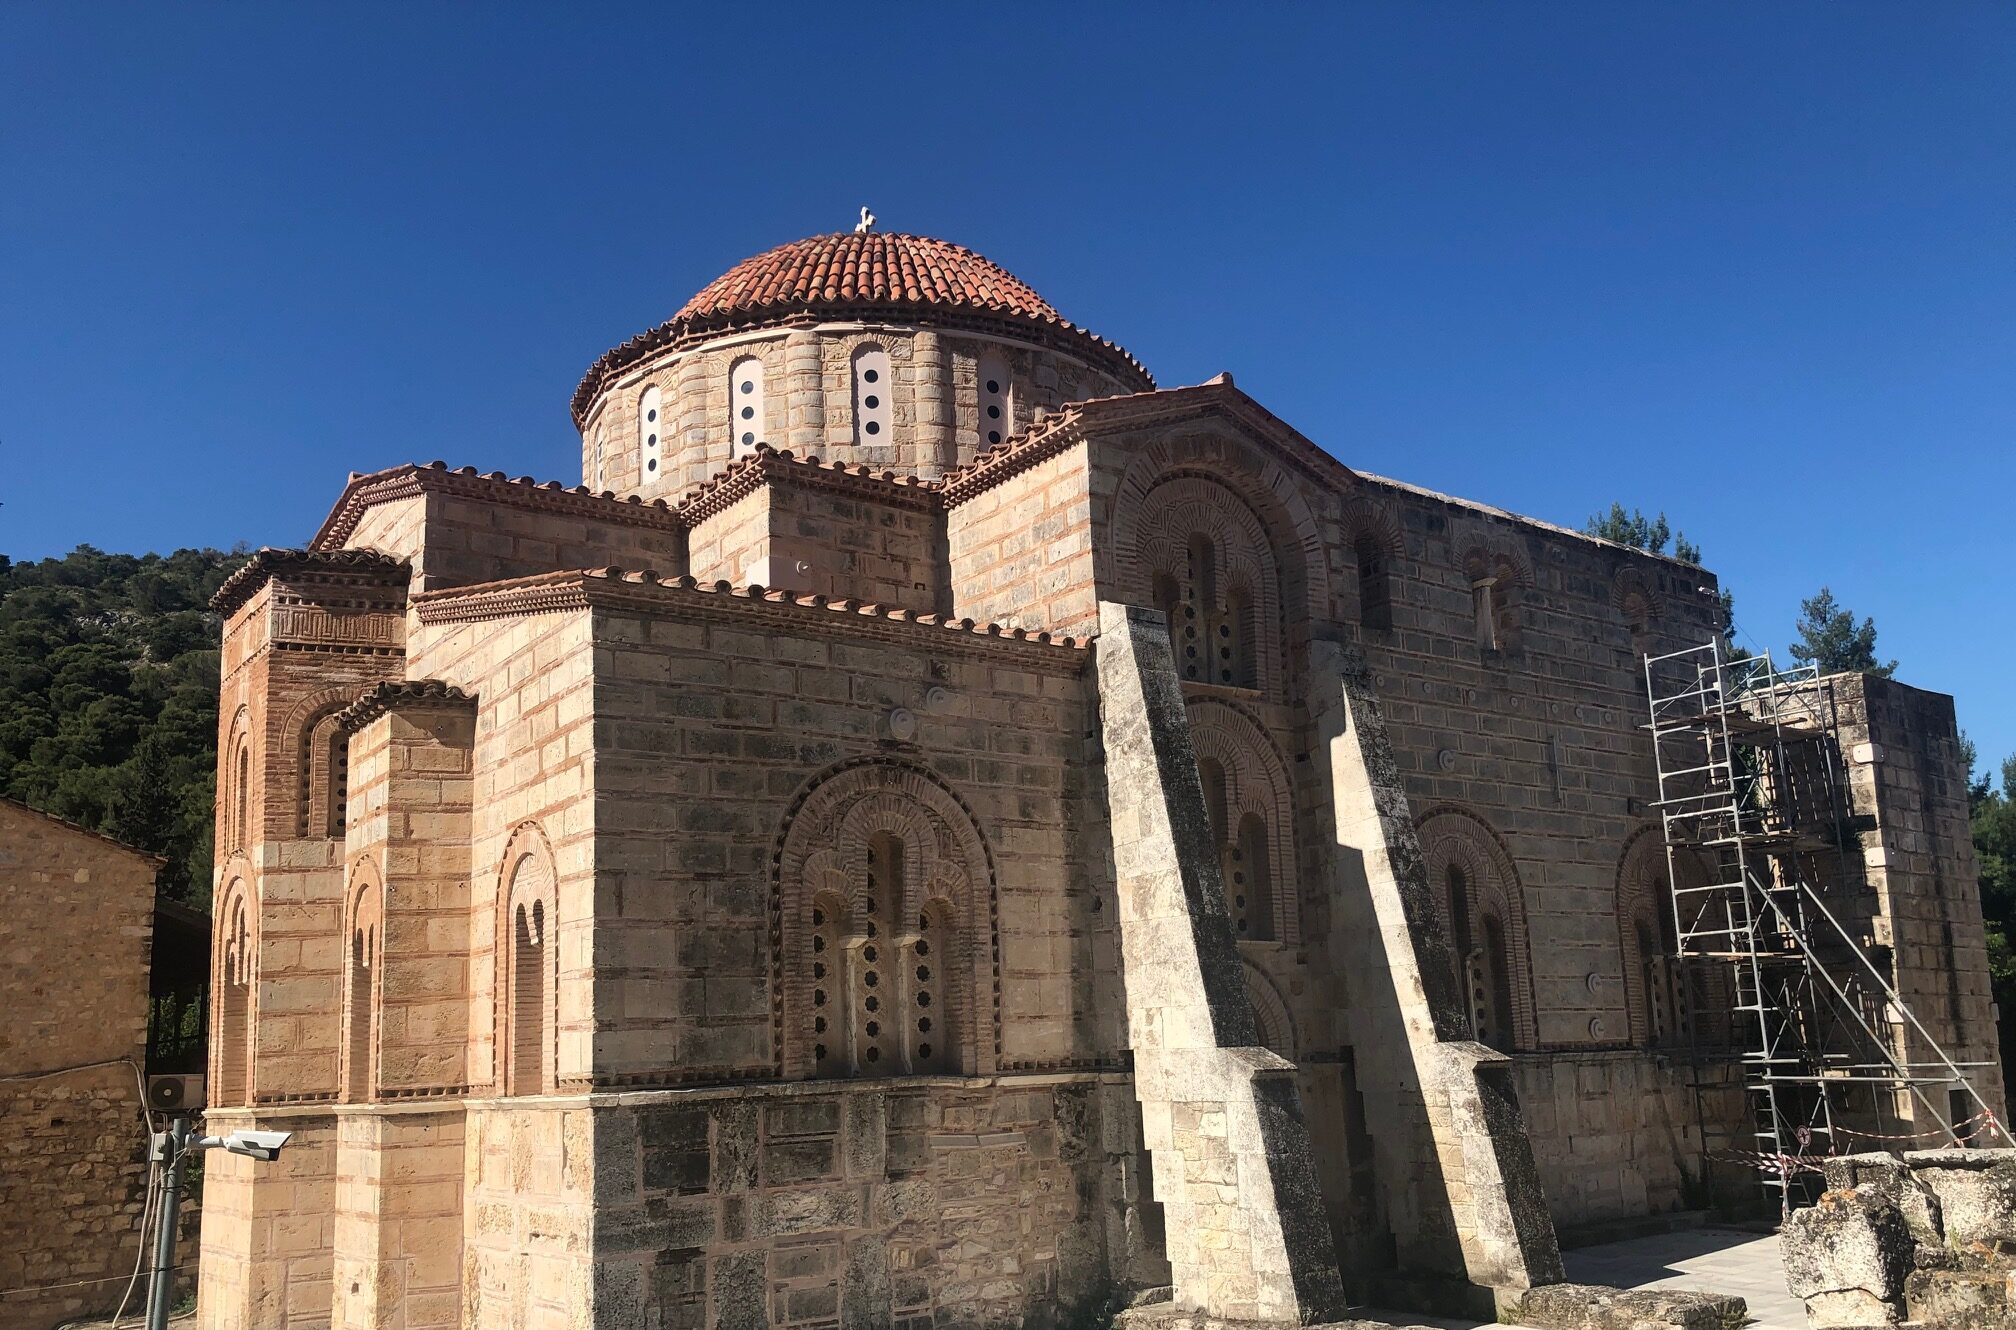 Dafni monastery in Greece